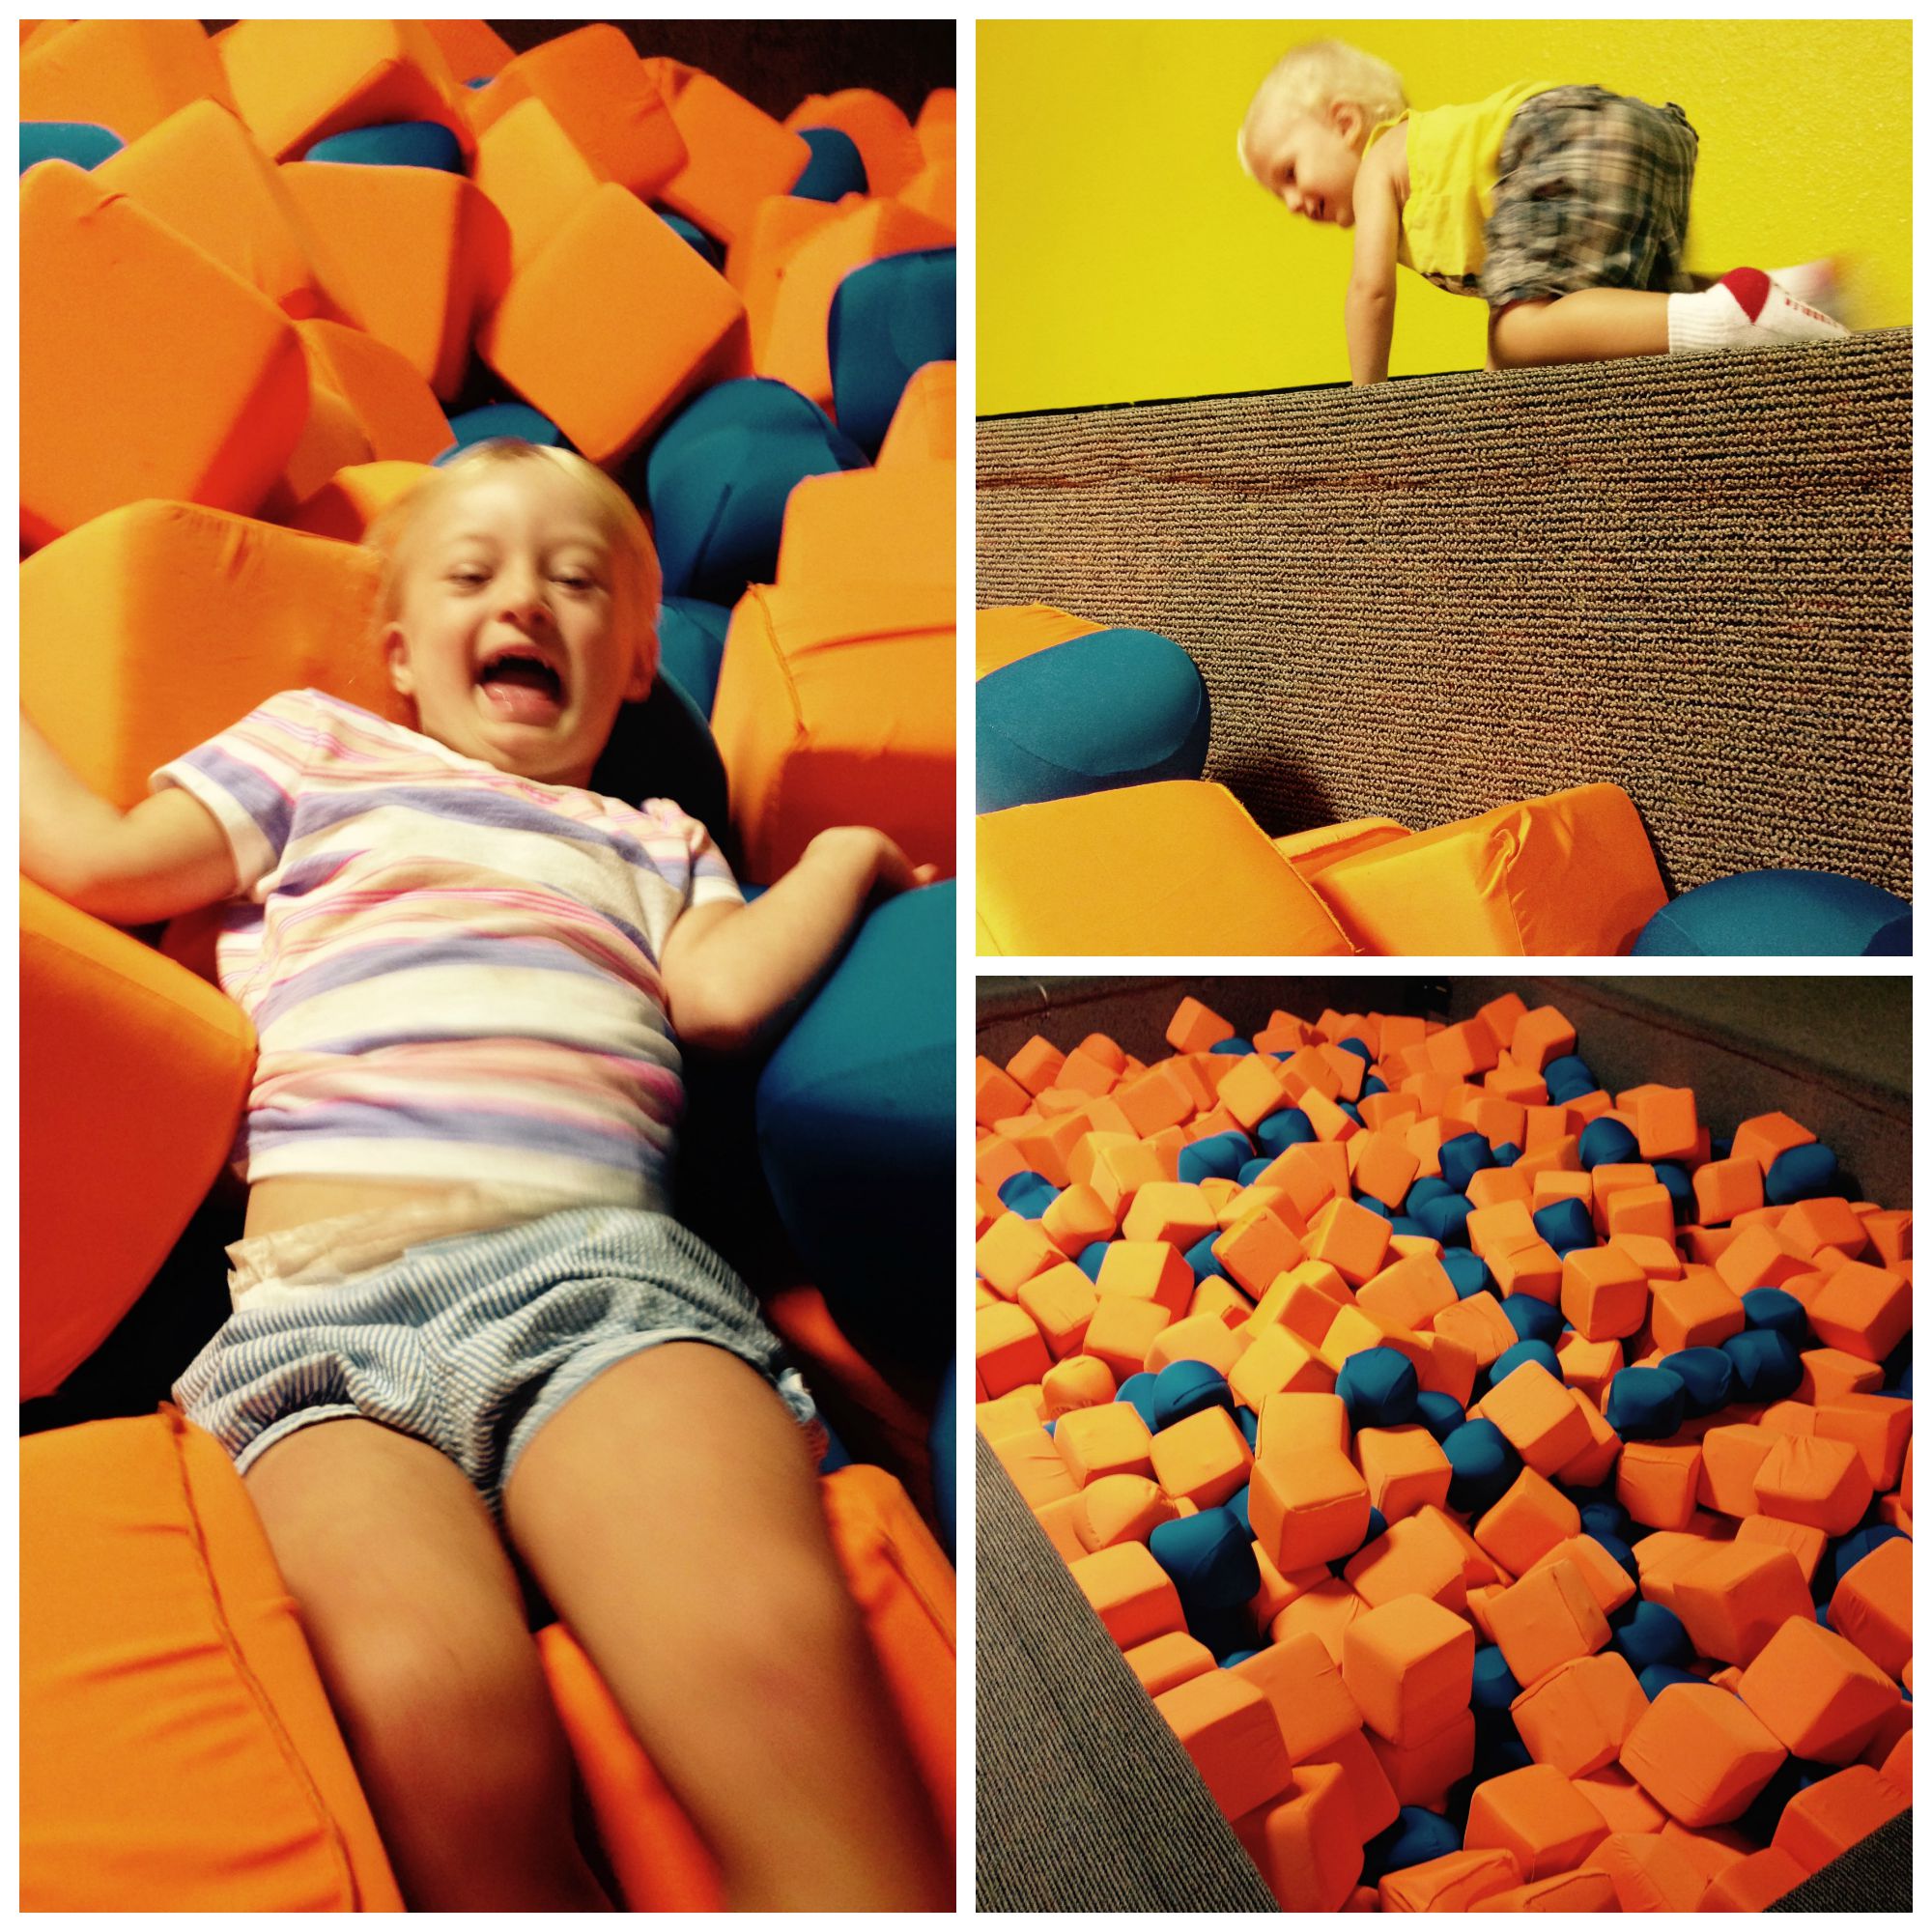 My kids LOVED the foam pit!